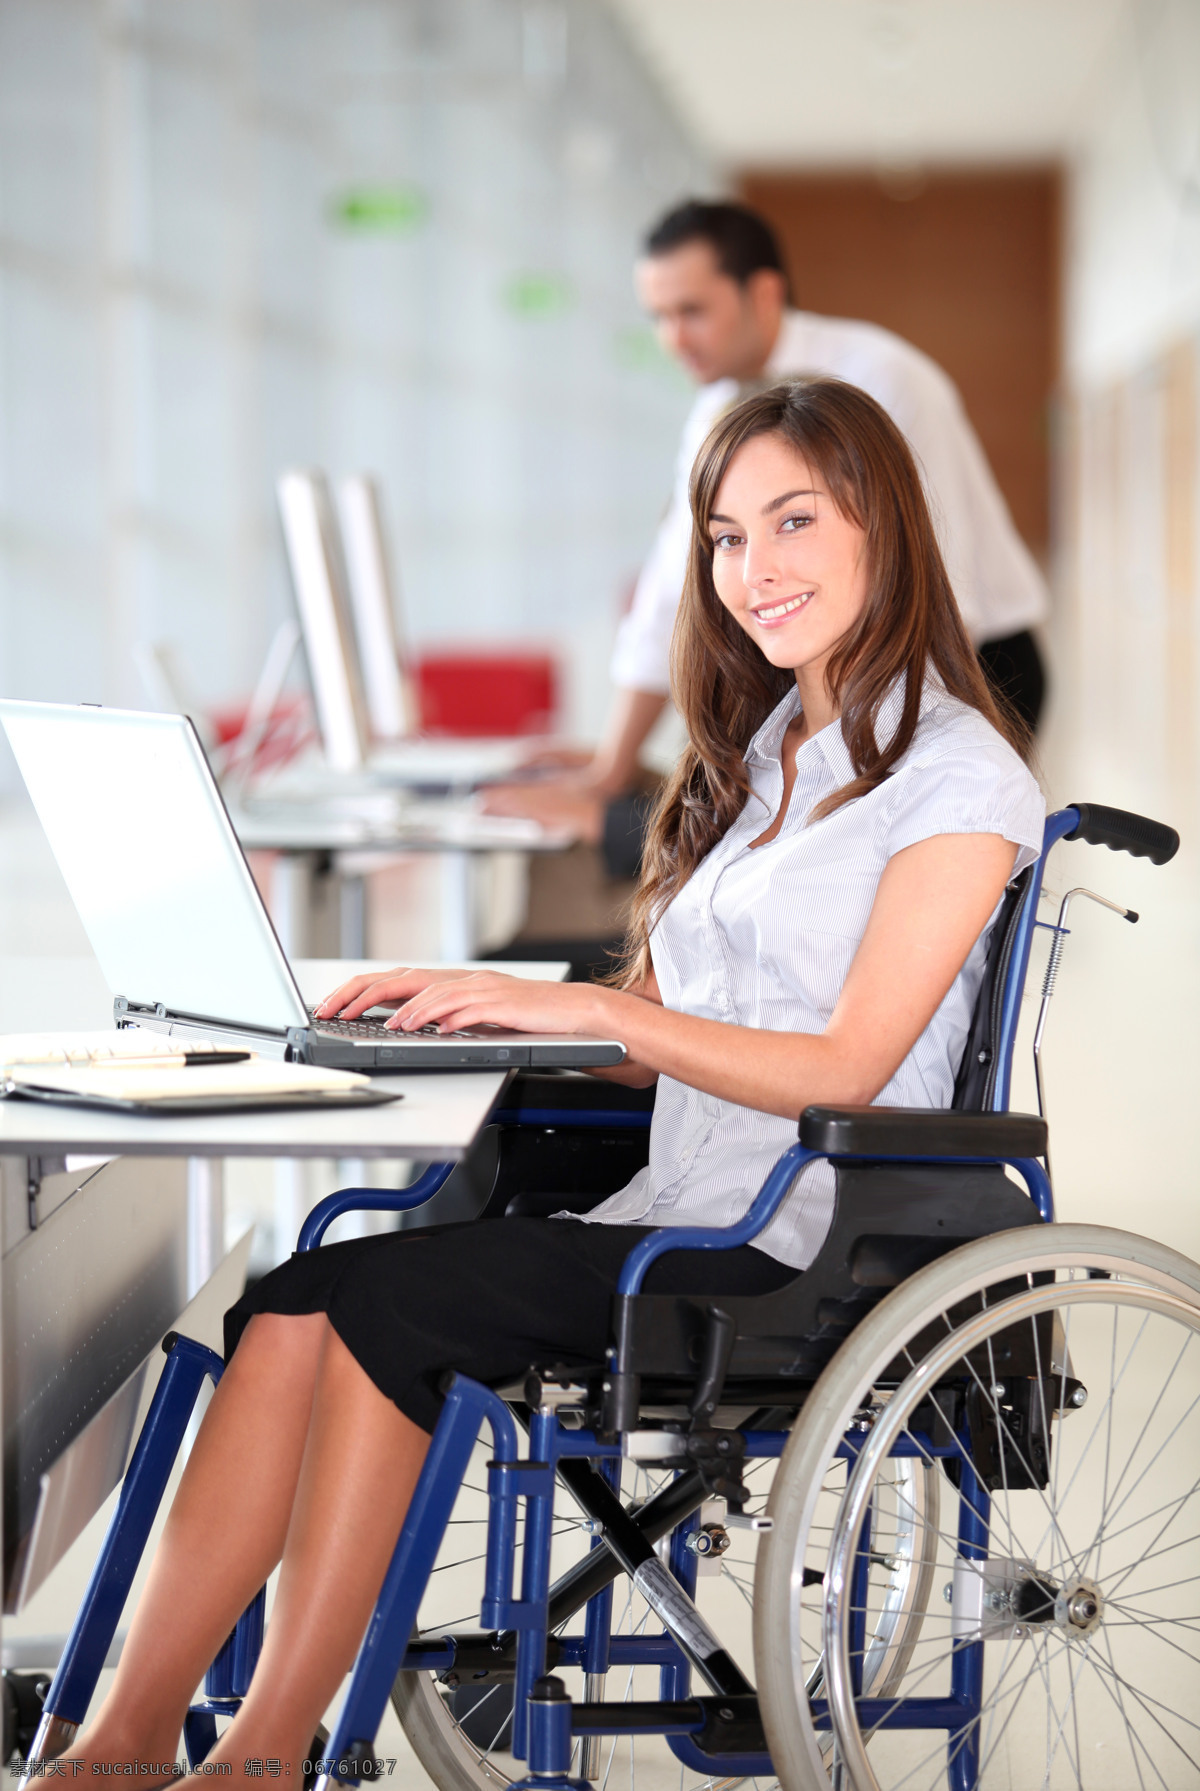 坐在 轮椅 上 电脑 女人 外国女人 笔记本电脑 男人 办公室 残疾人 其他人物 人物图片